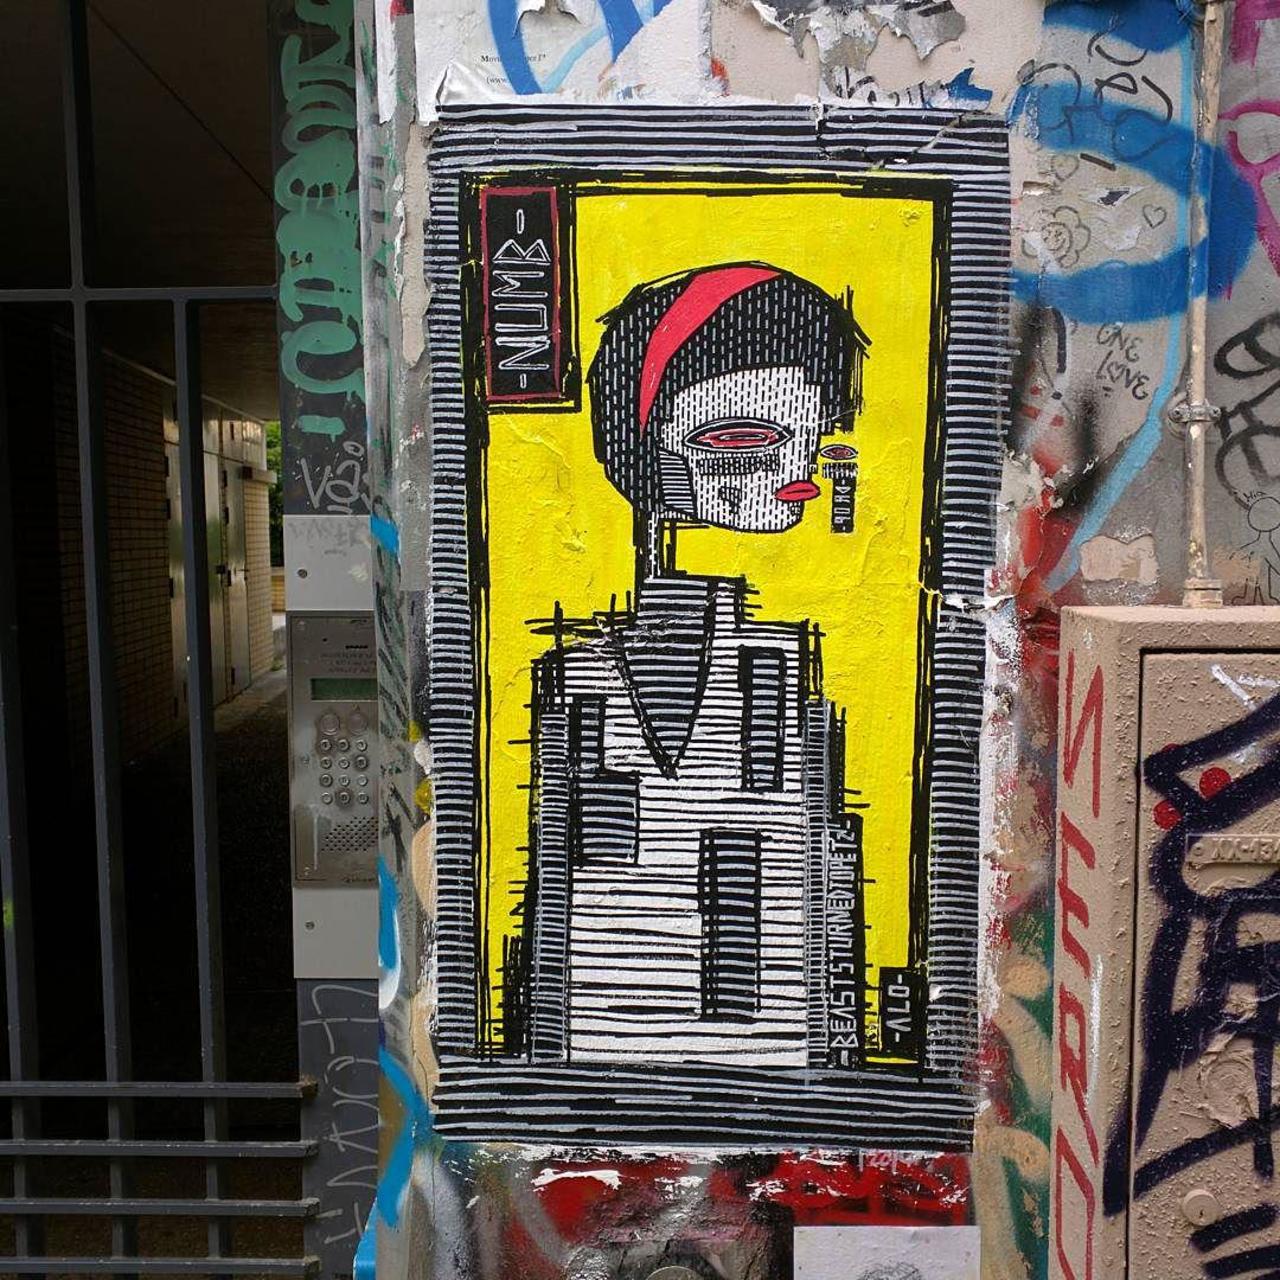 #Paris #graffiti photo by @alphaquadra http://ift.tt/1MeQuOx #StreetArt http://t.co/ykCNLWixGq